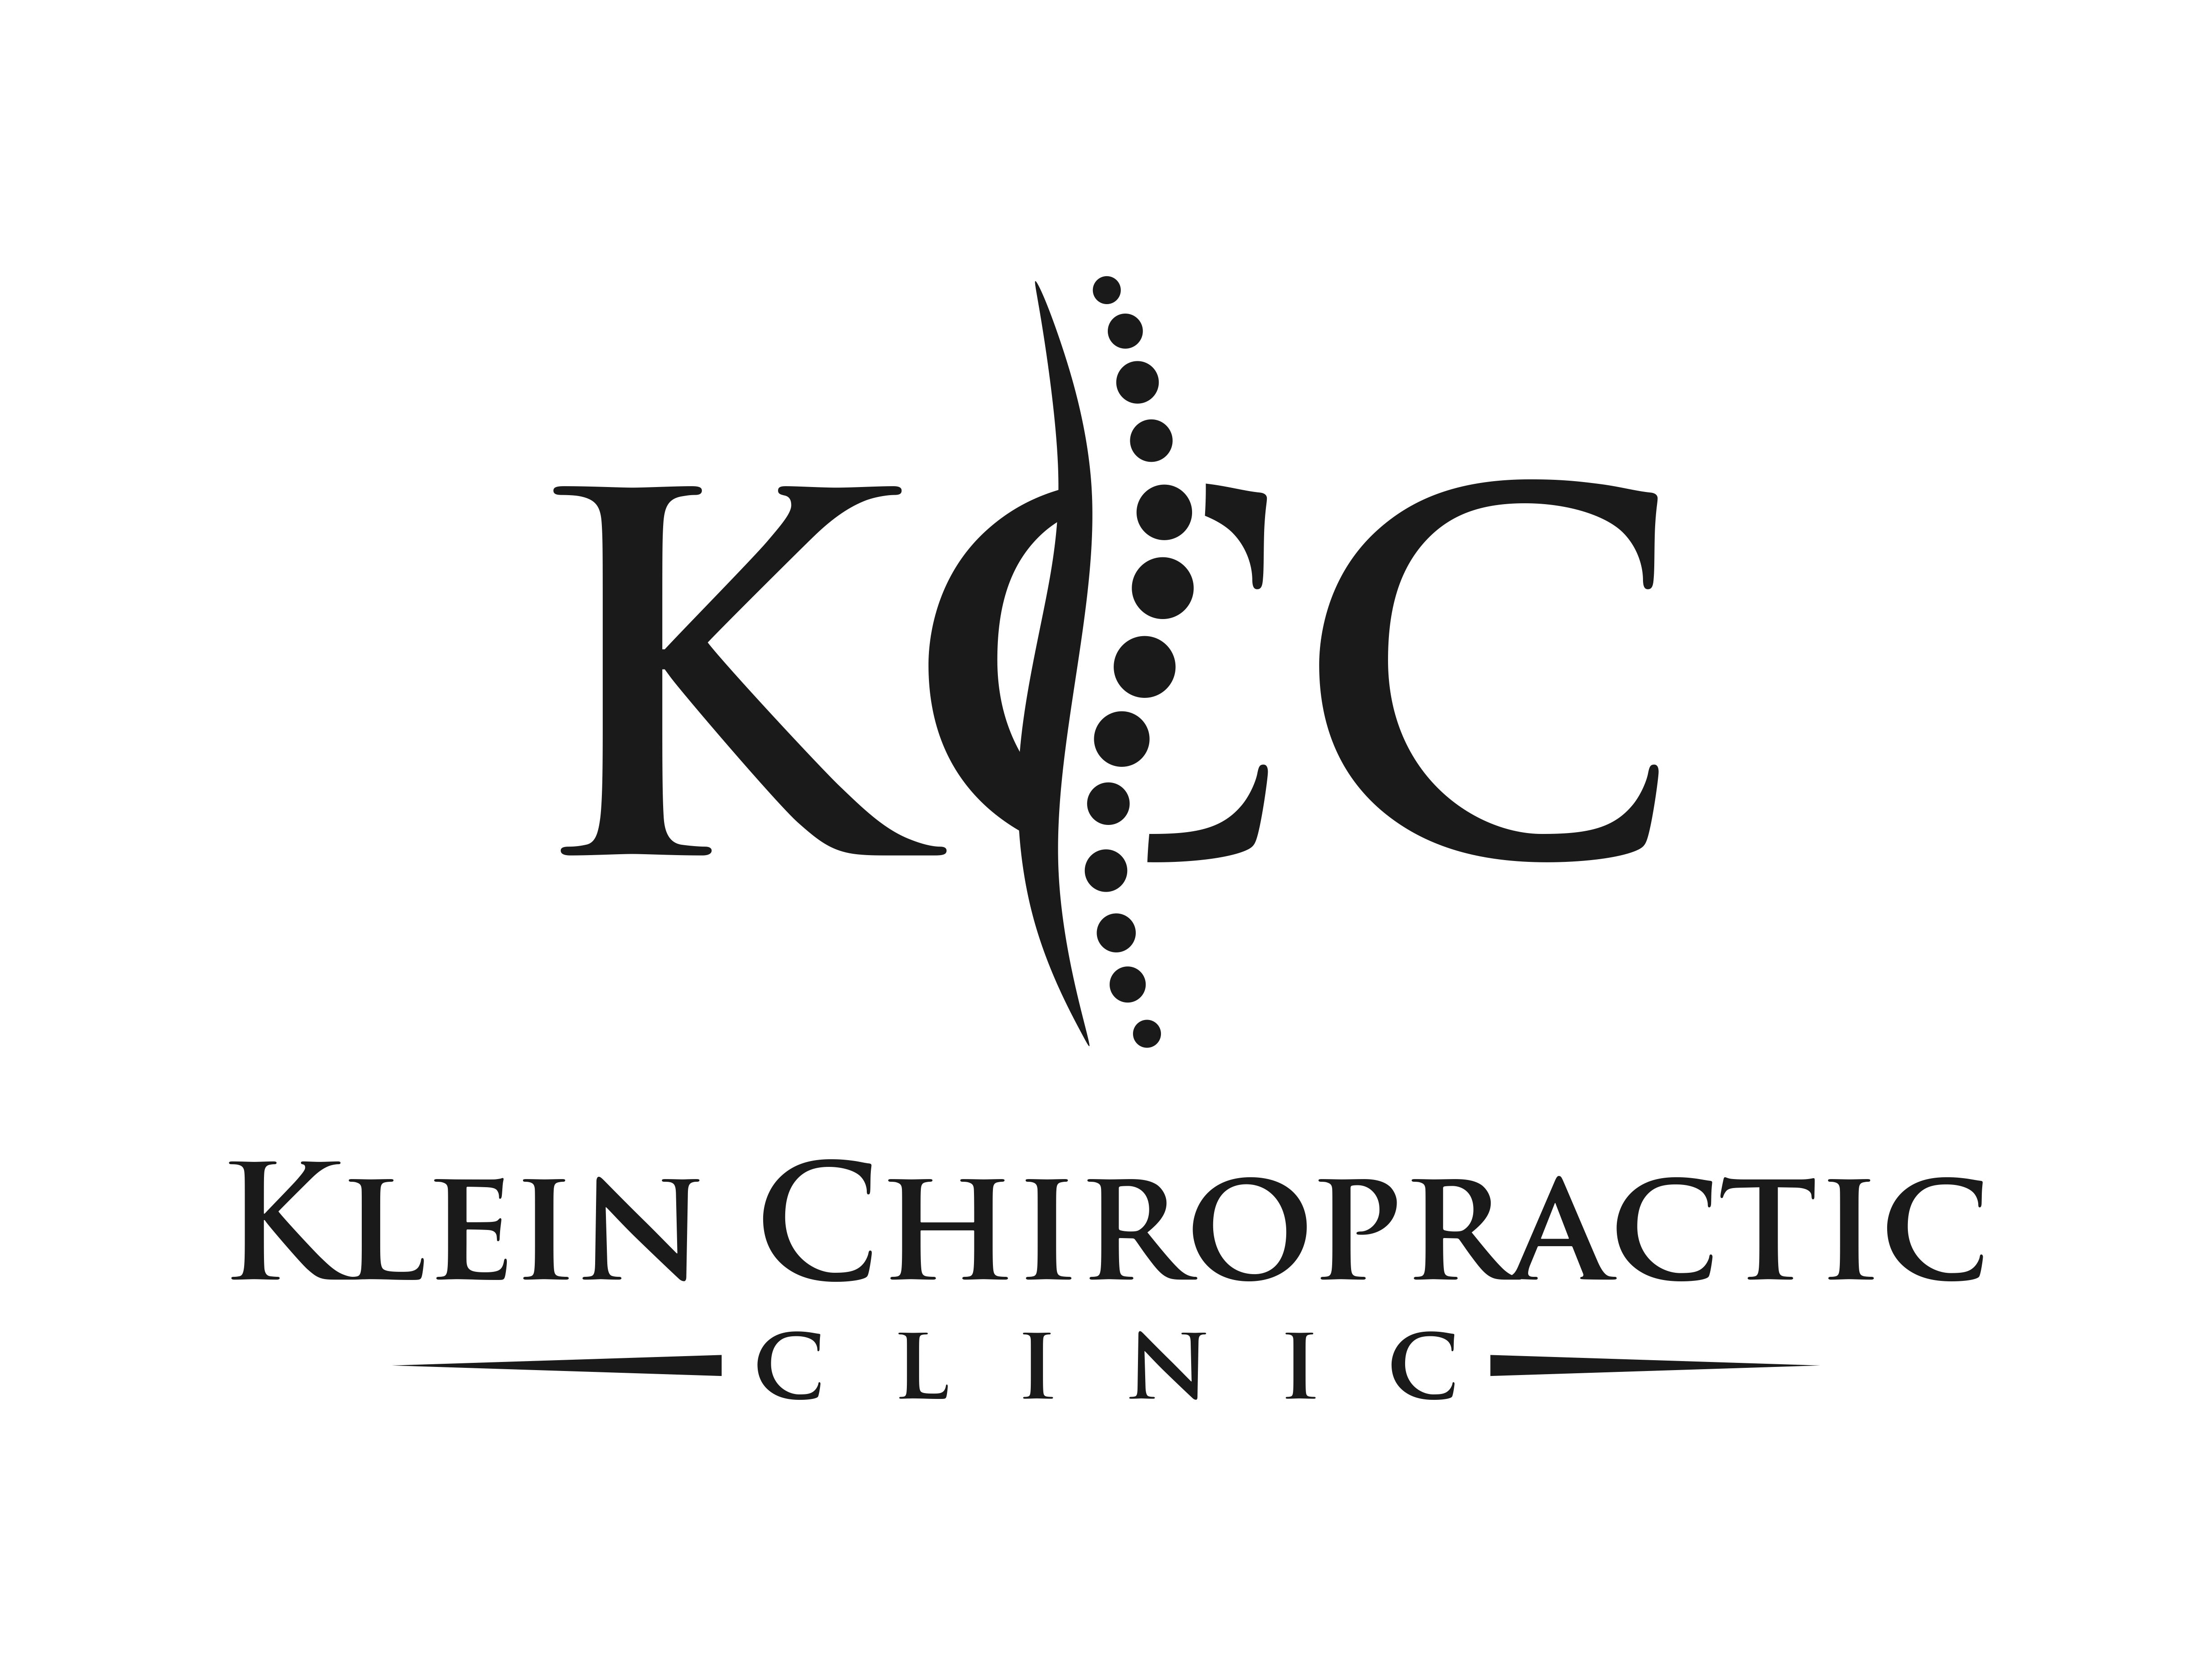 Klein Chiropractic Clinic